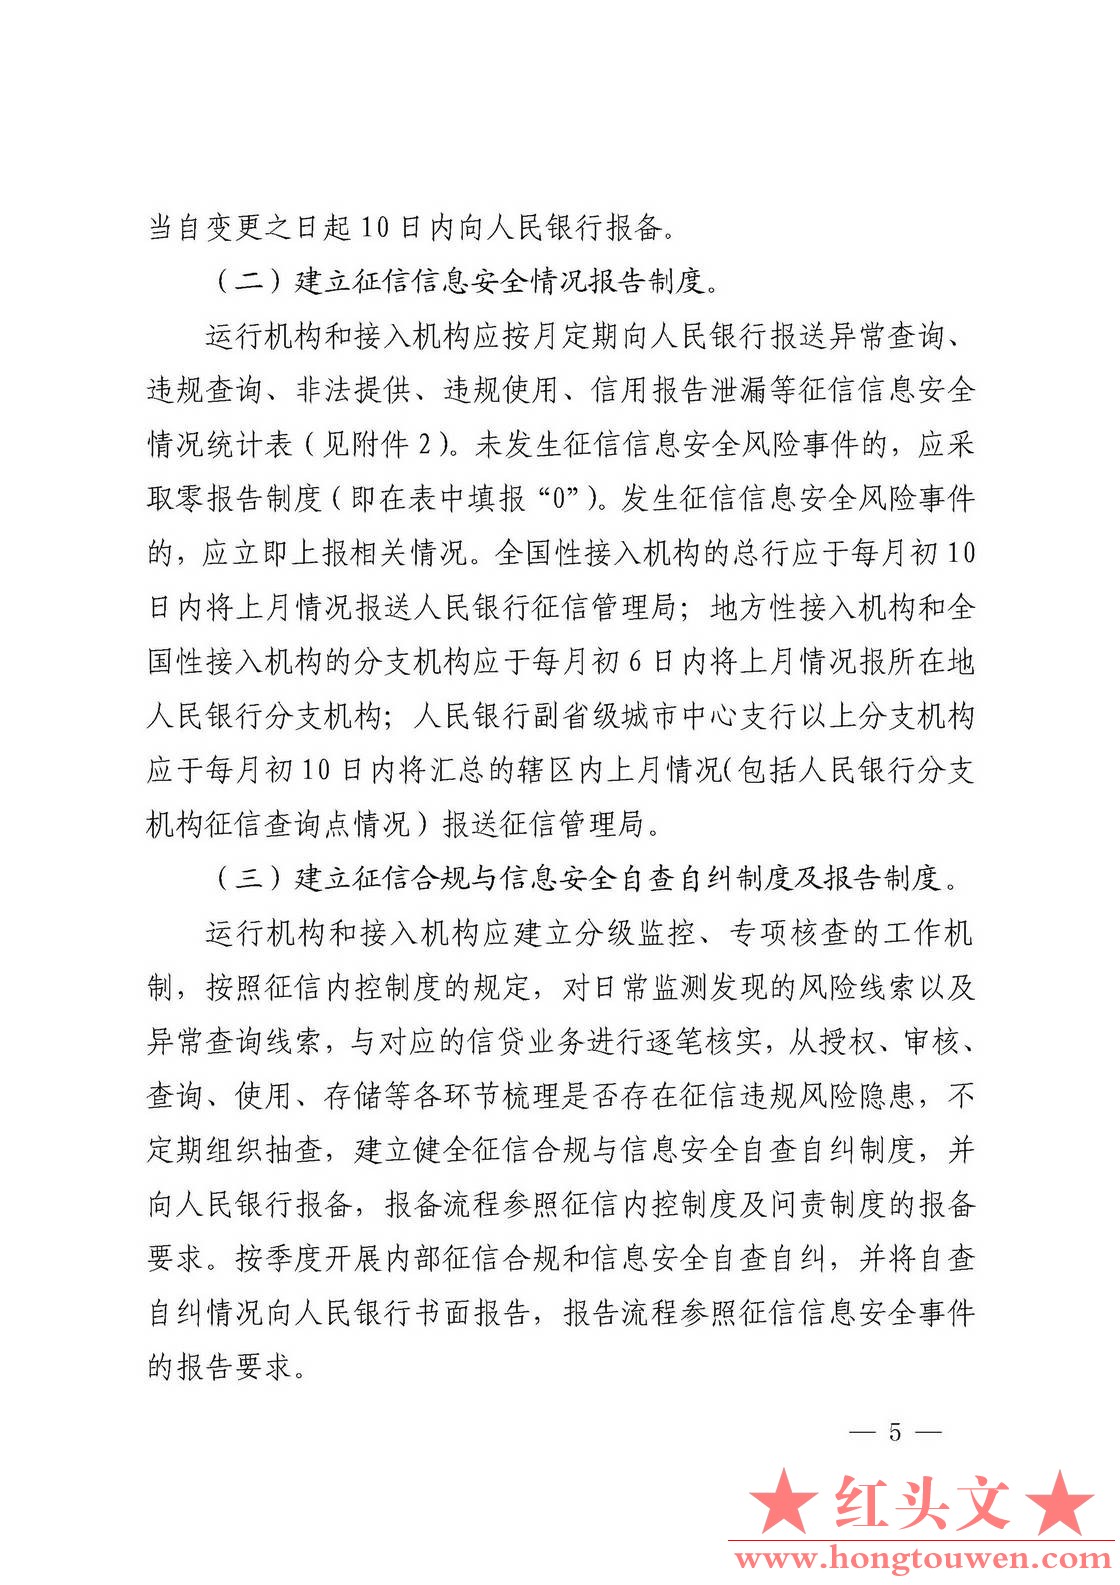 银发[2018]102号-中国人民银行关于进一步加强征信信息安全管理的通知_页面_05.jpg.jpg